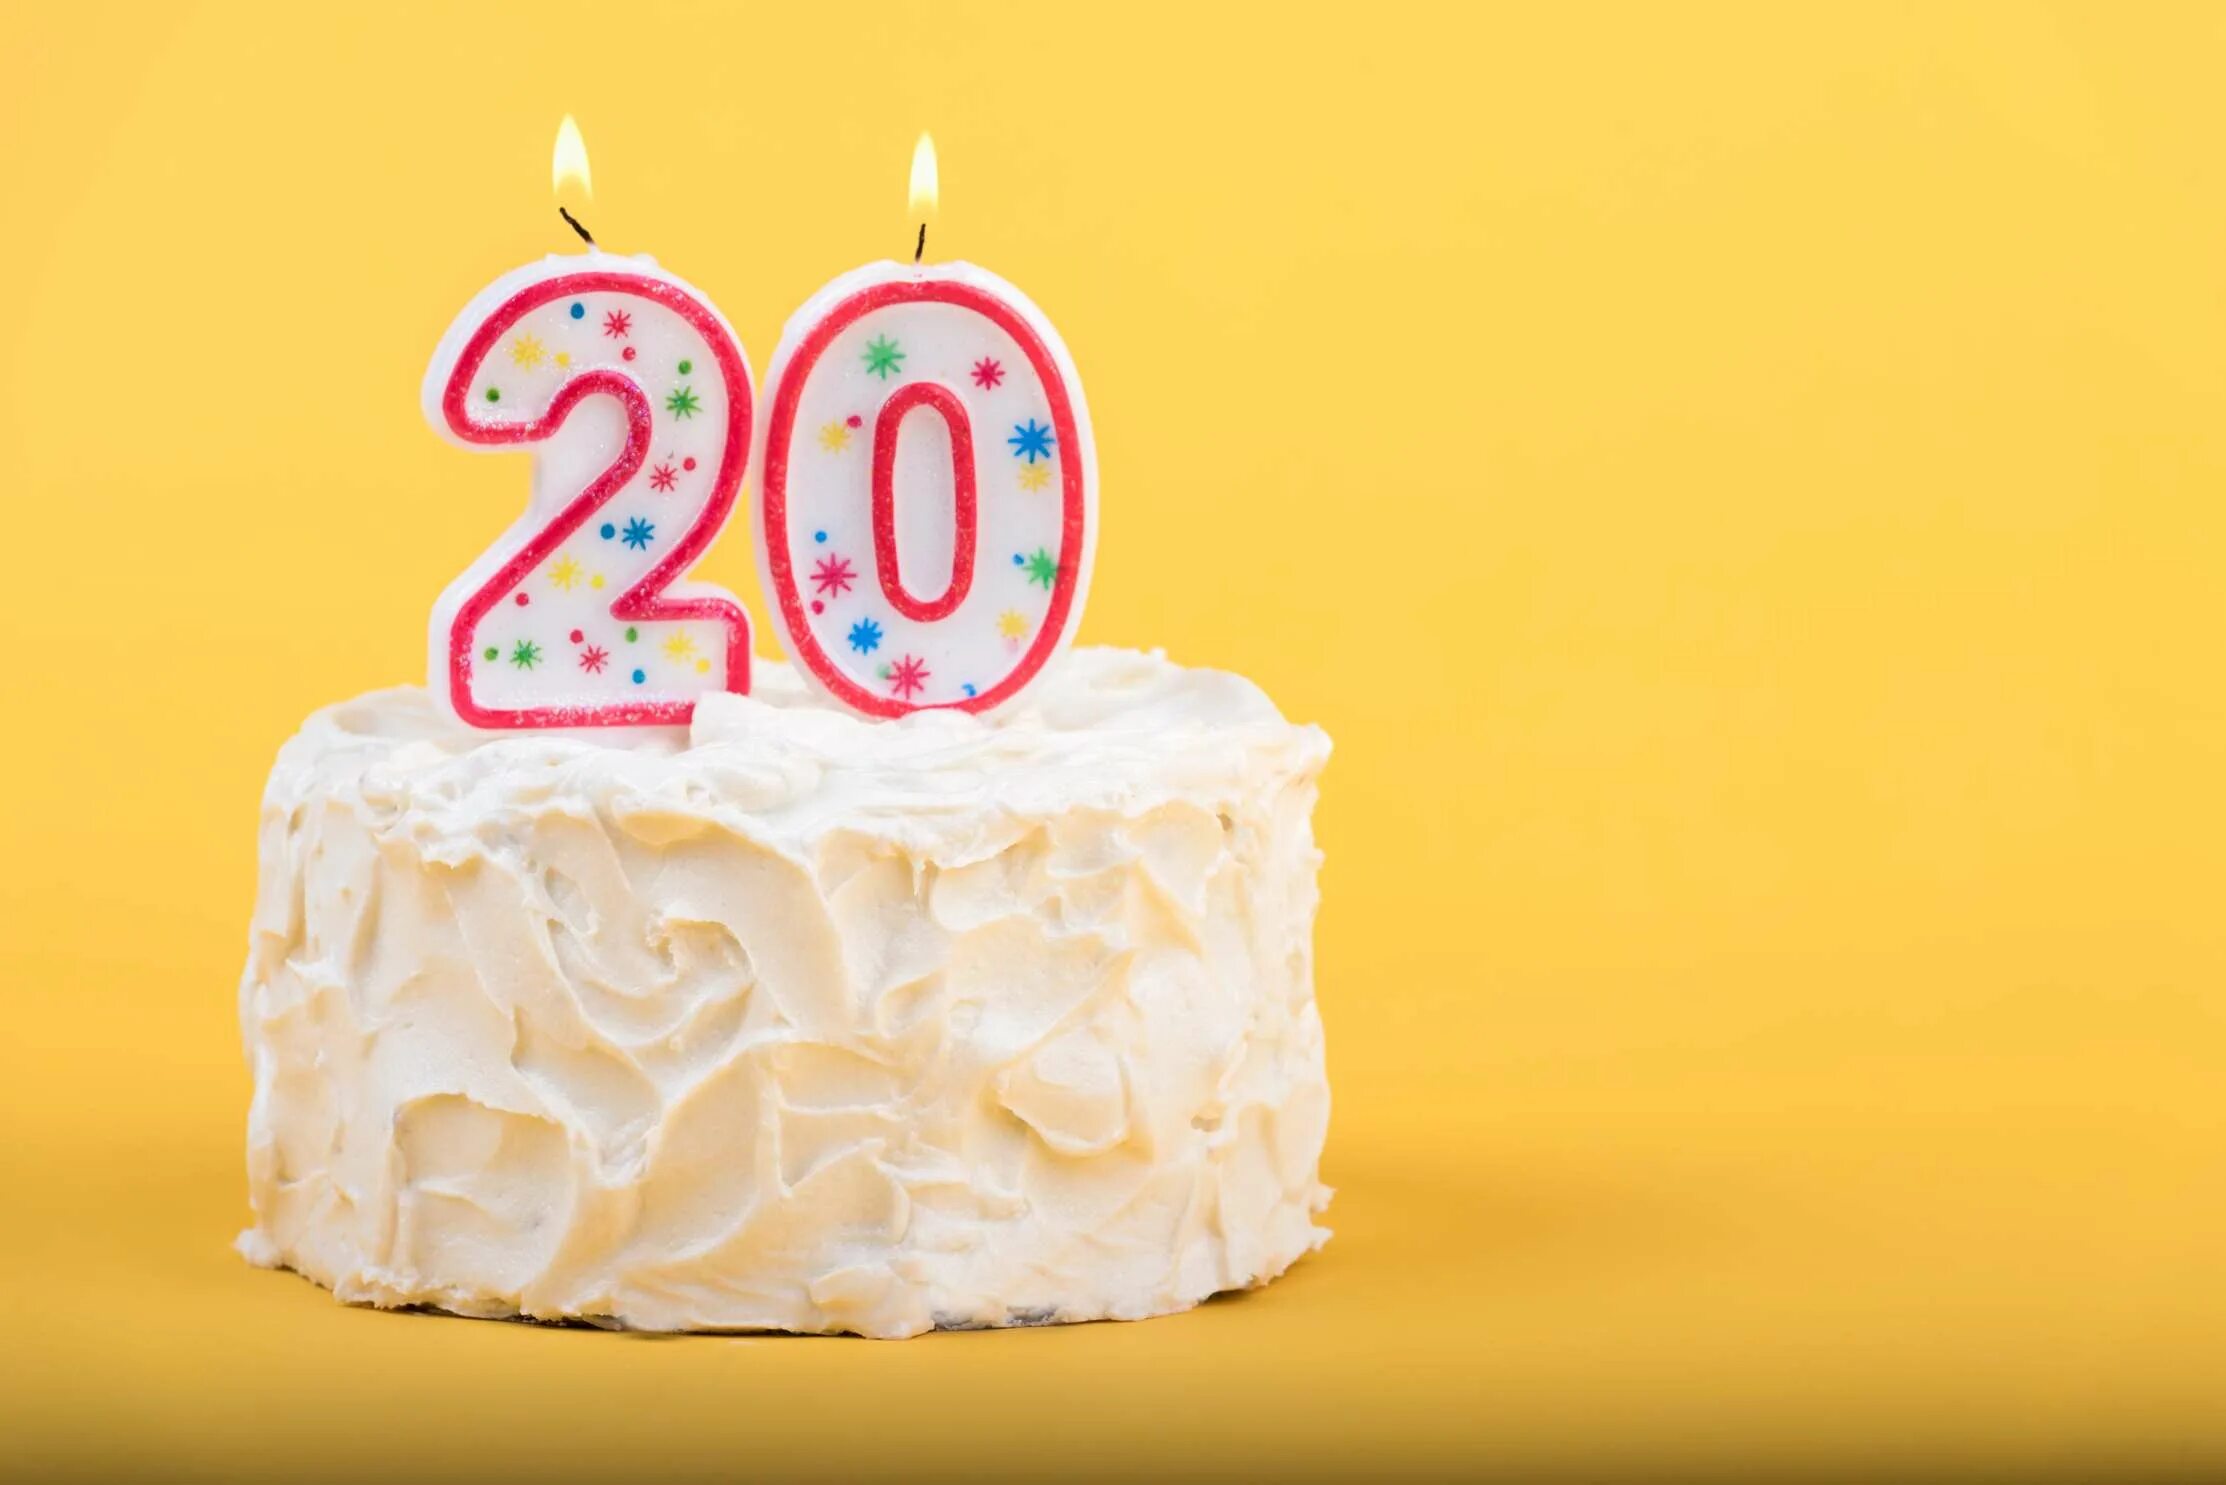 Двадцатилетие pax. Торт со свечами 20 лет. С днём рождения 20 лет. Торт со свечкой 30 лет. Тортик с 10 свечками.